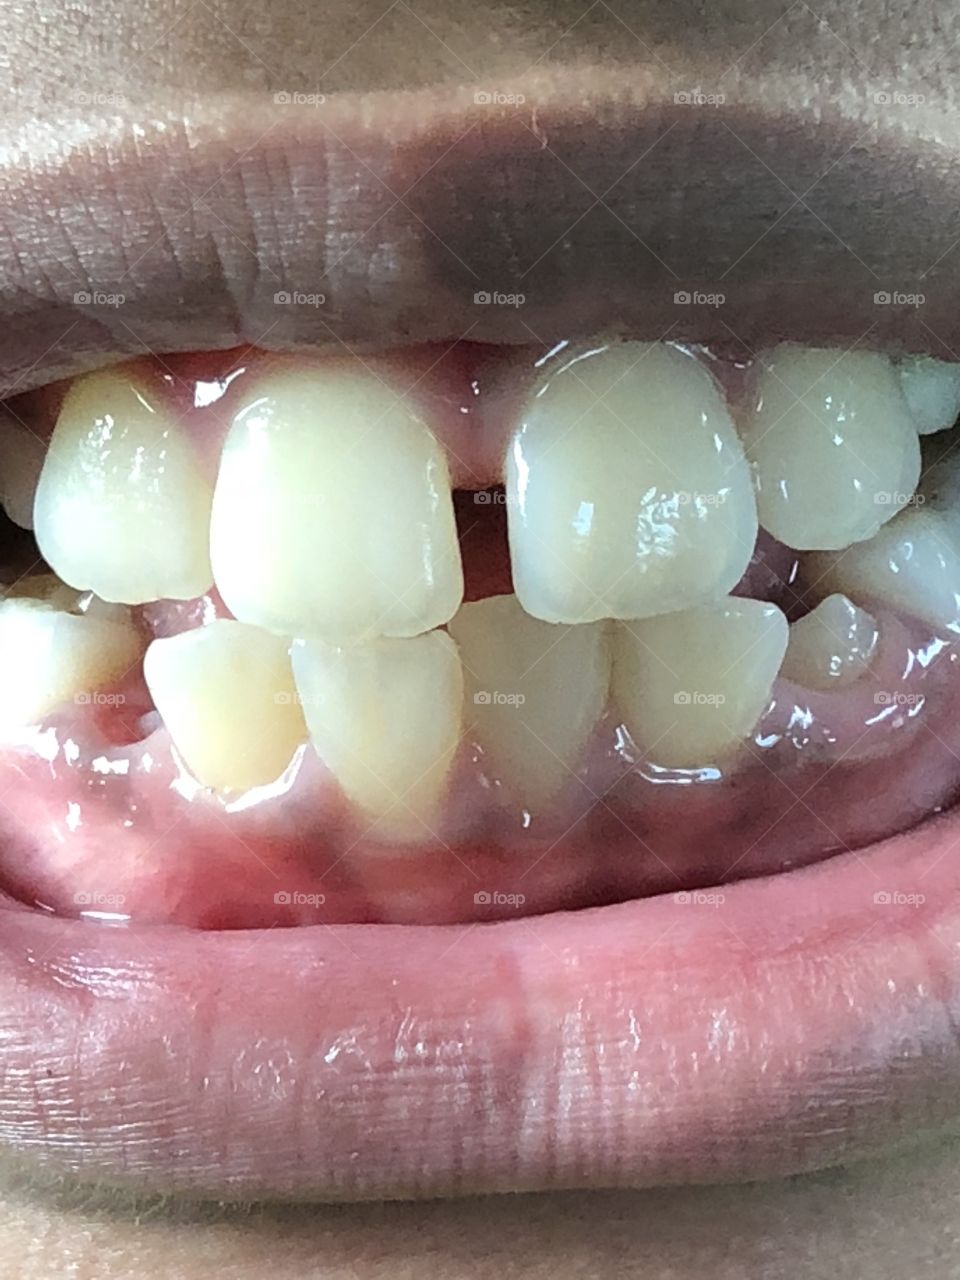 Dentistry 